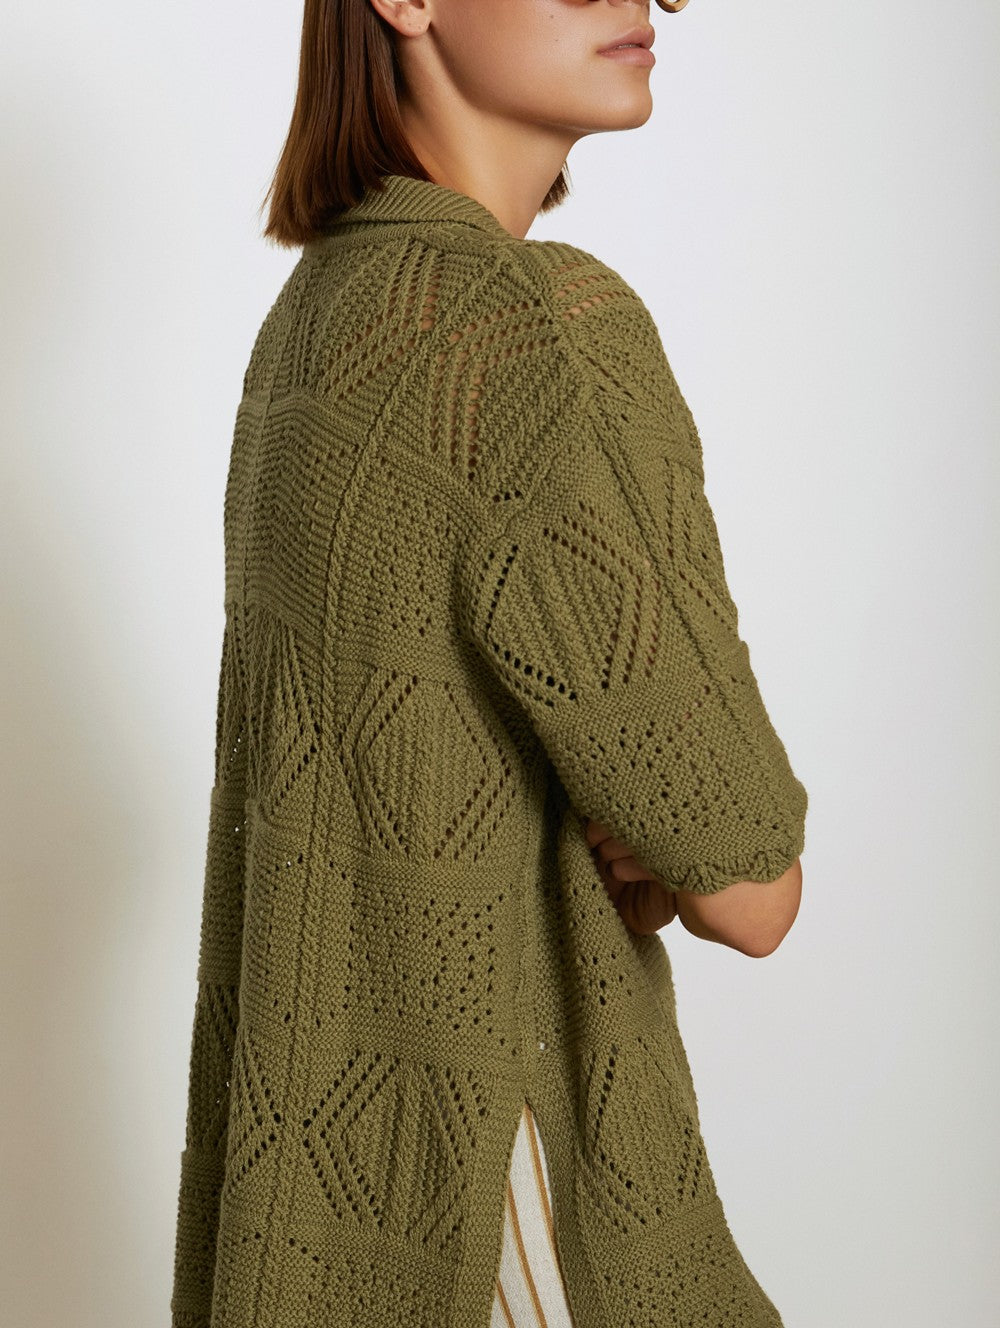 Crochet Knit Tunic - Fern